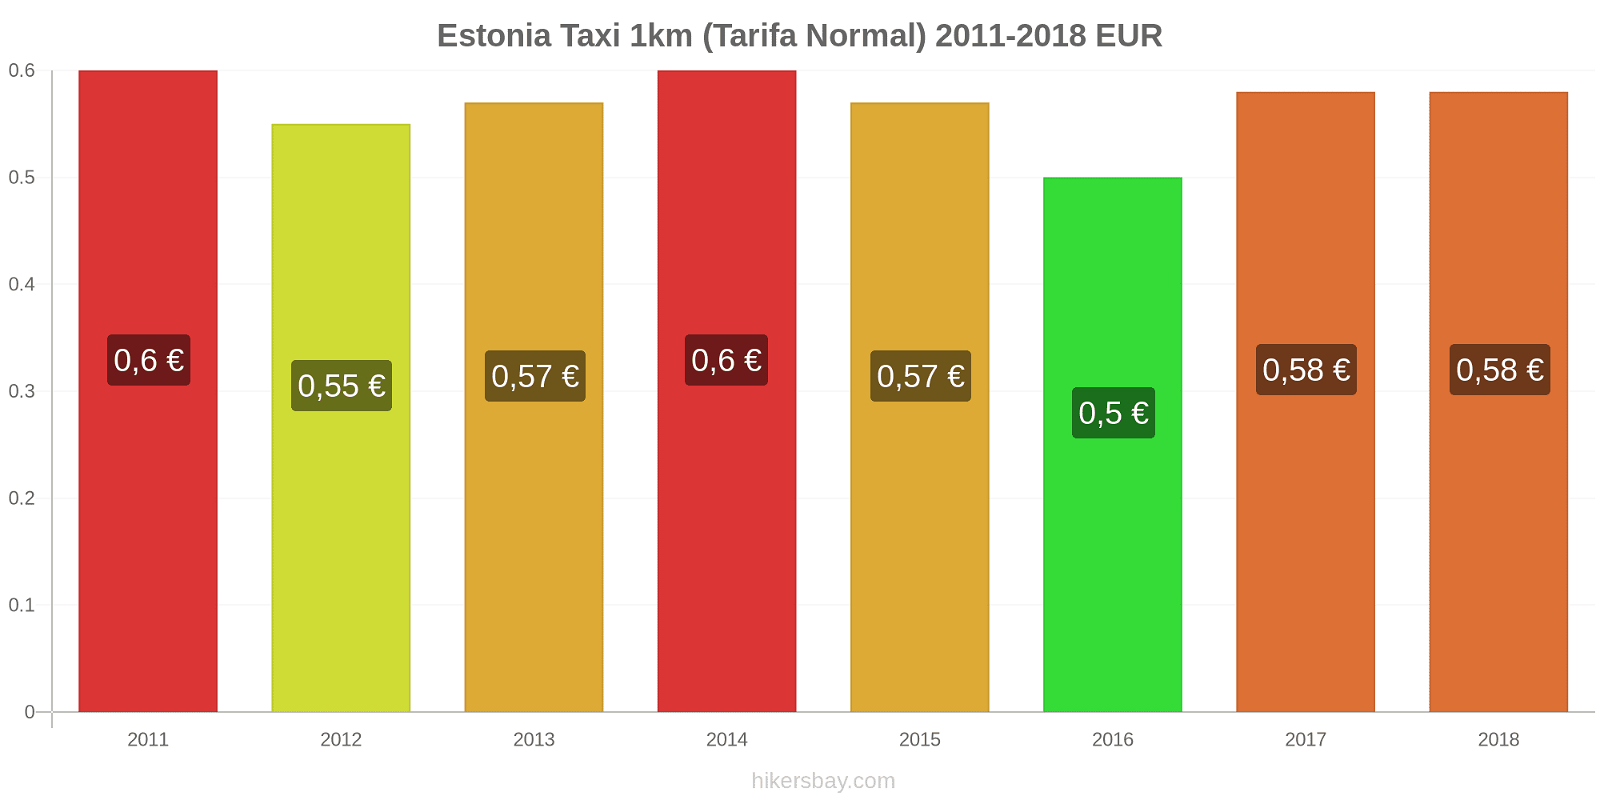 Estonia cambios de precios Taxi 1km (tarifa normal) hikersbay.com